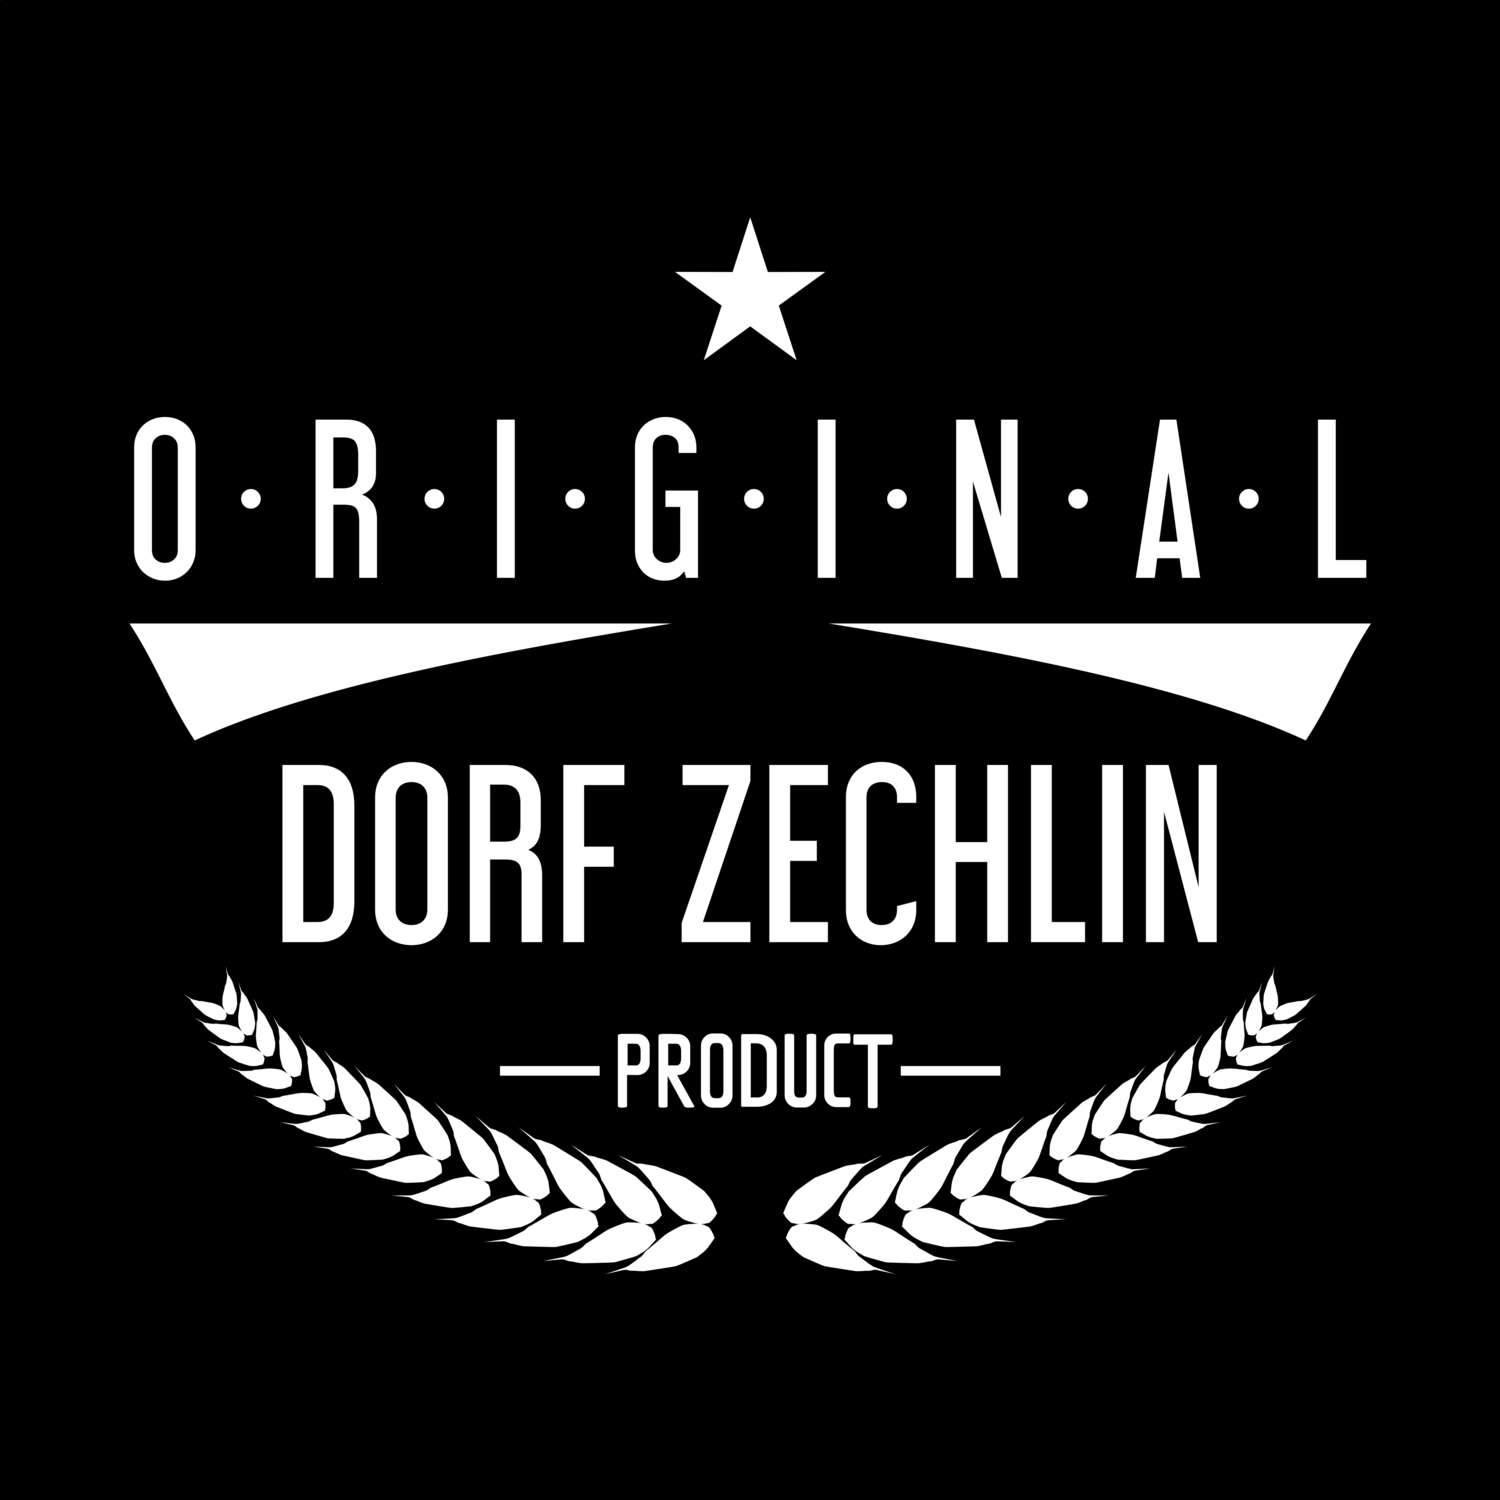 Dorf Zechlin T-Shirt »Original Product«